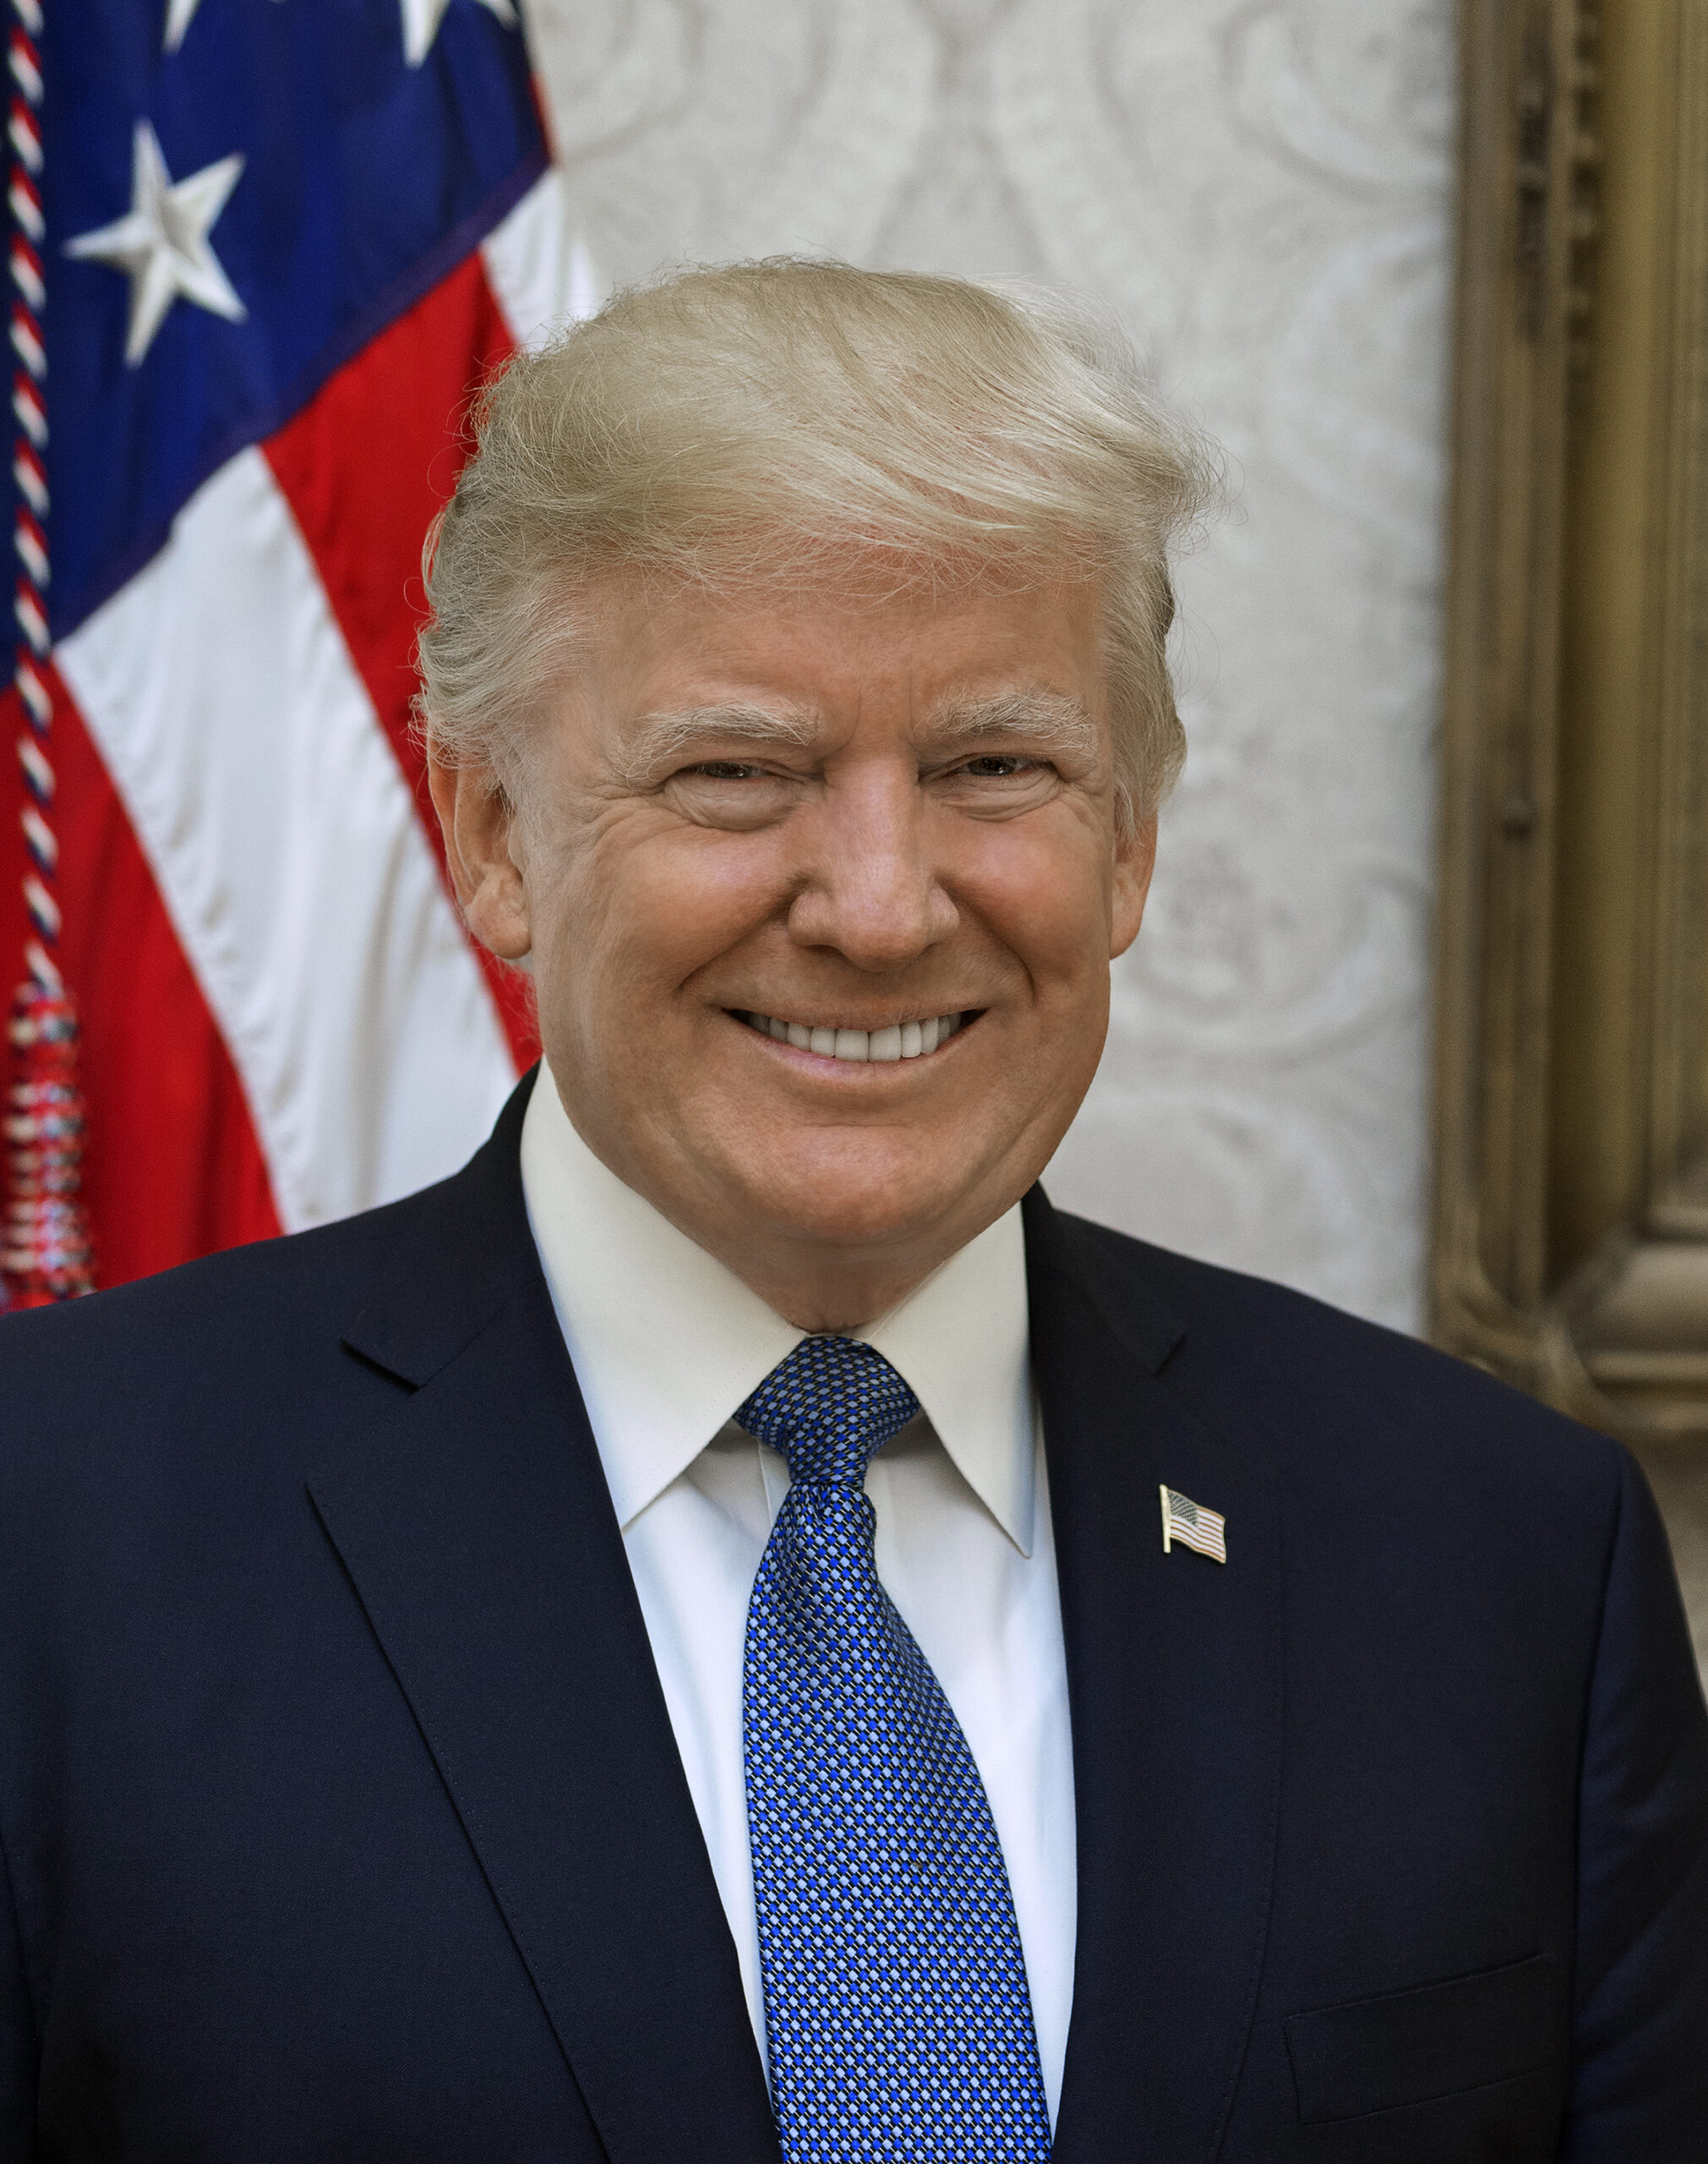 Donald-Trump-official-portrait